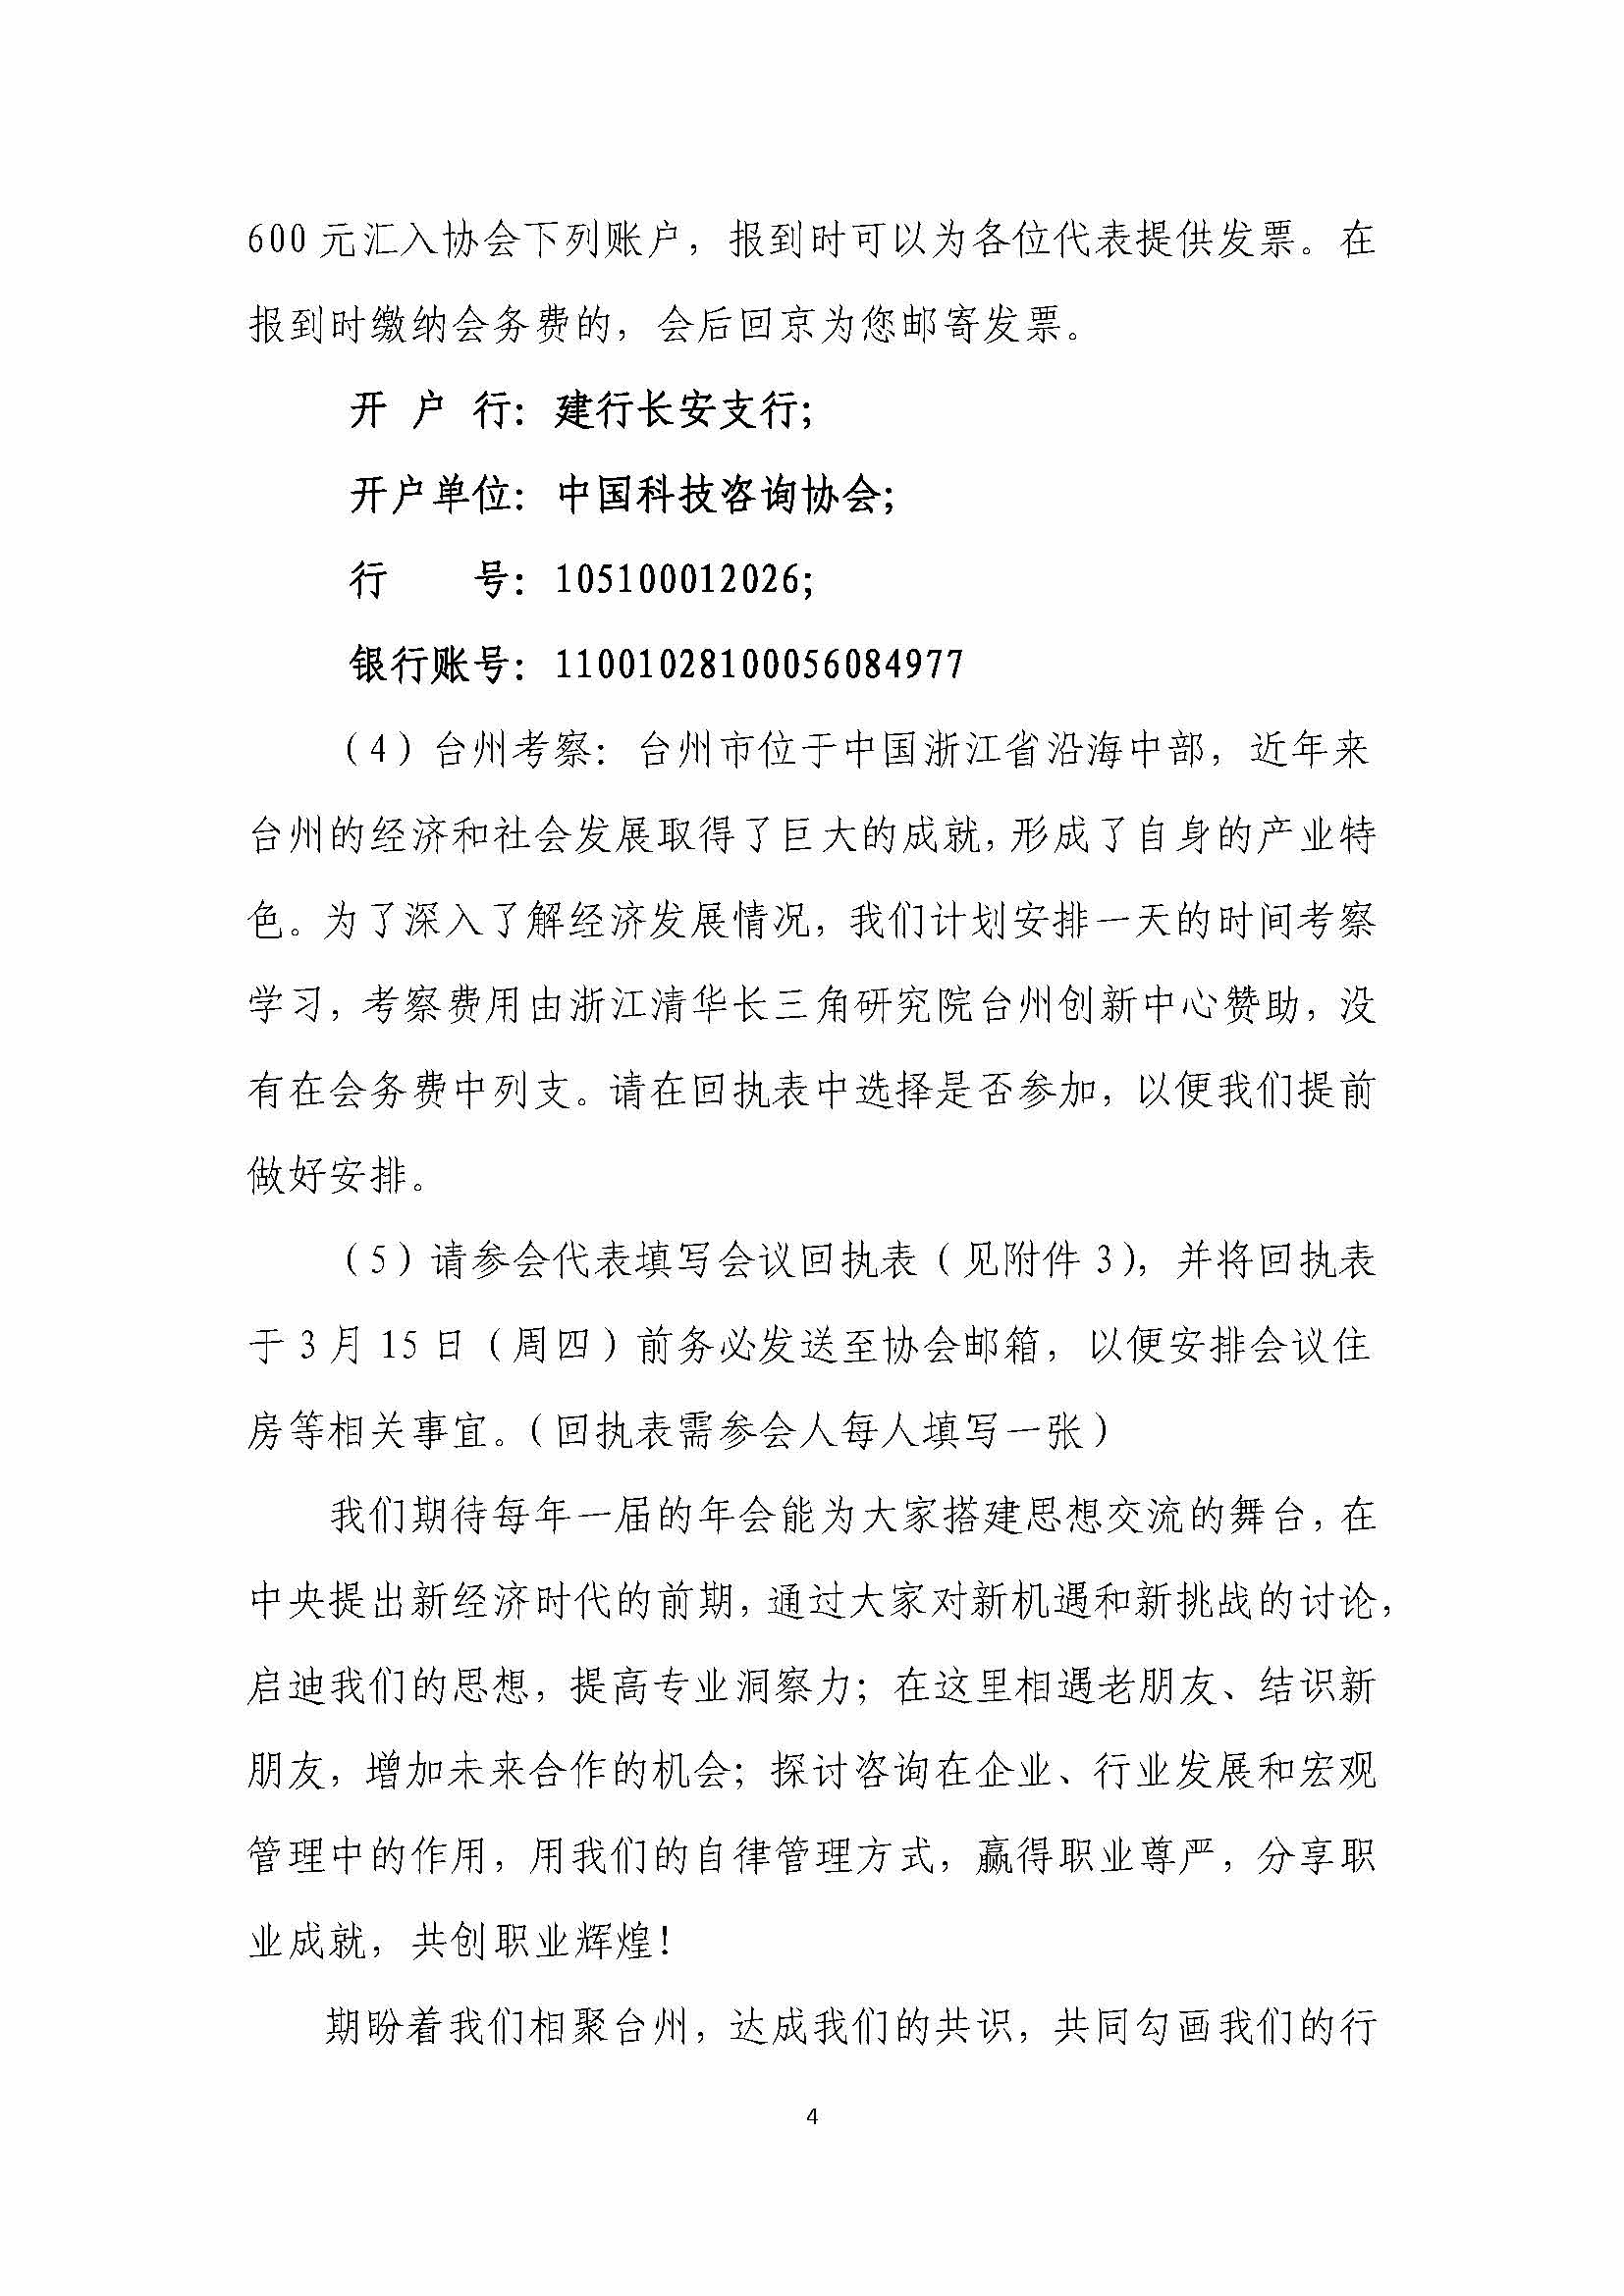 关于召开中国科技咨询协会2017年年会的通知_页面_04.jpg